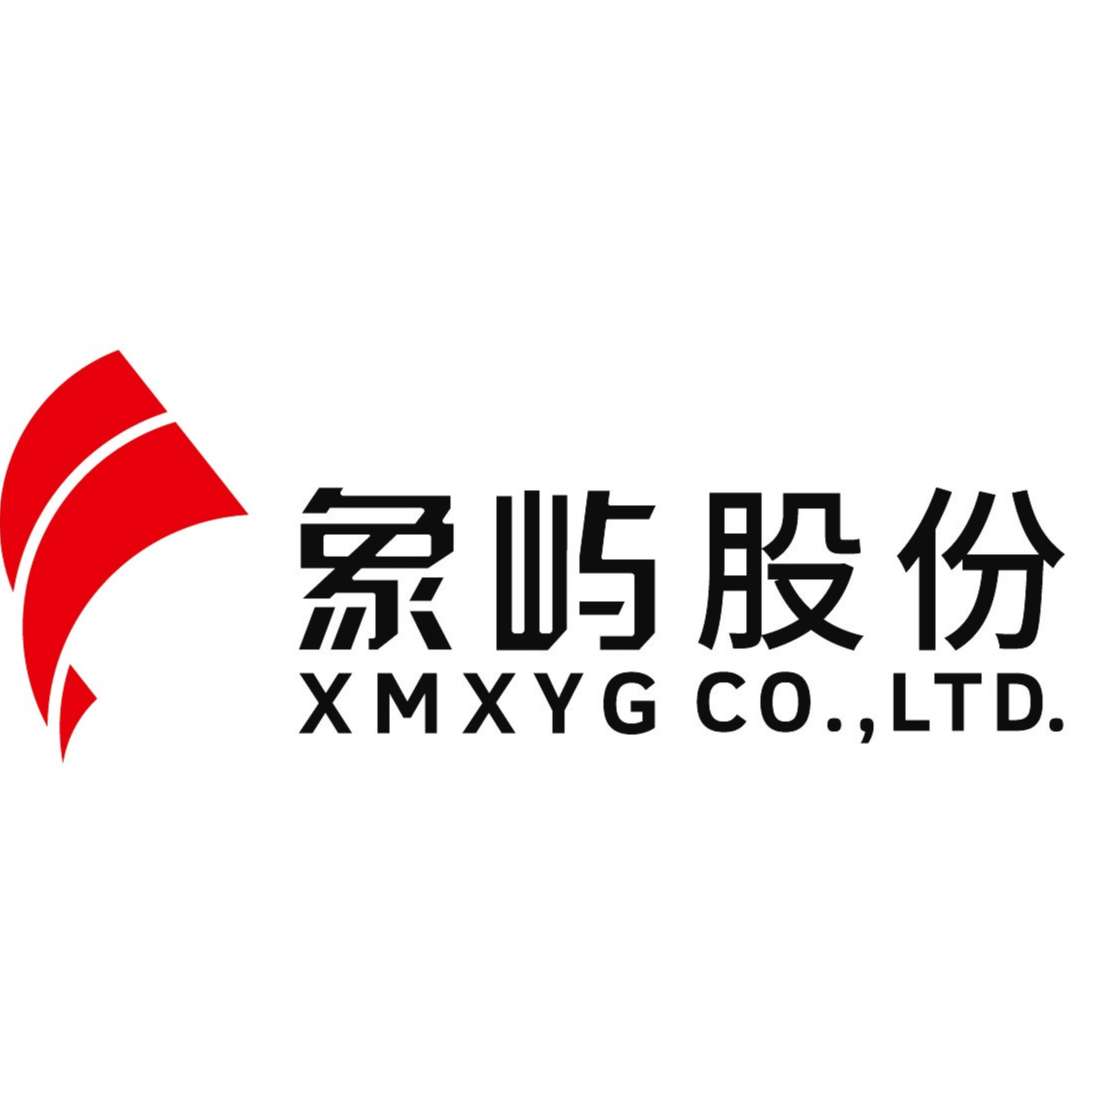 XIAMEN XIANGYU CO., LTD.  logo